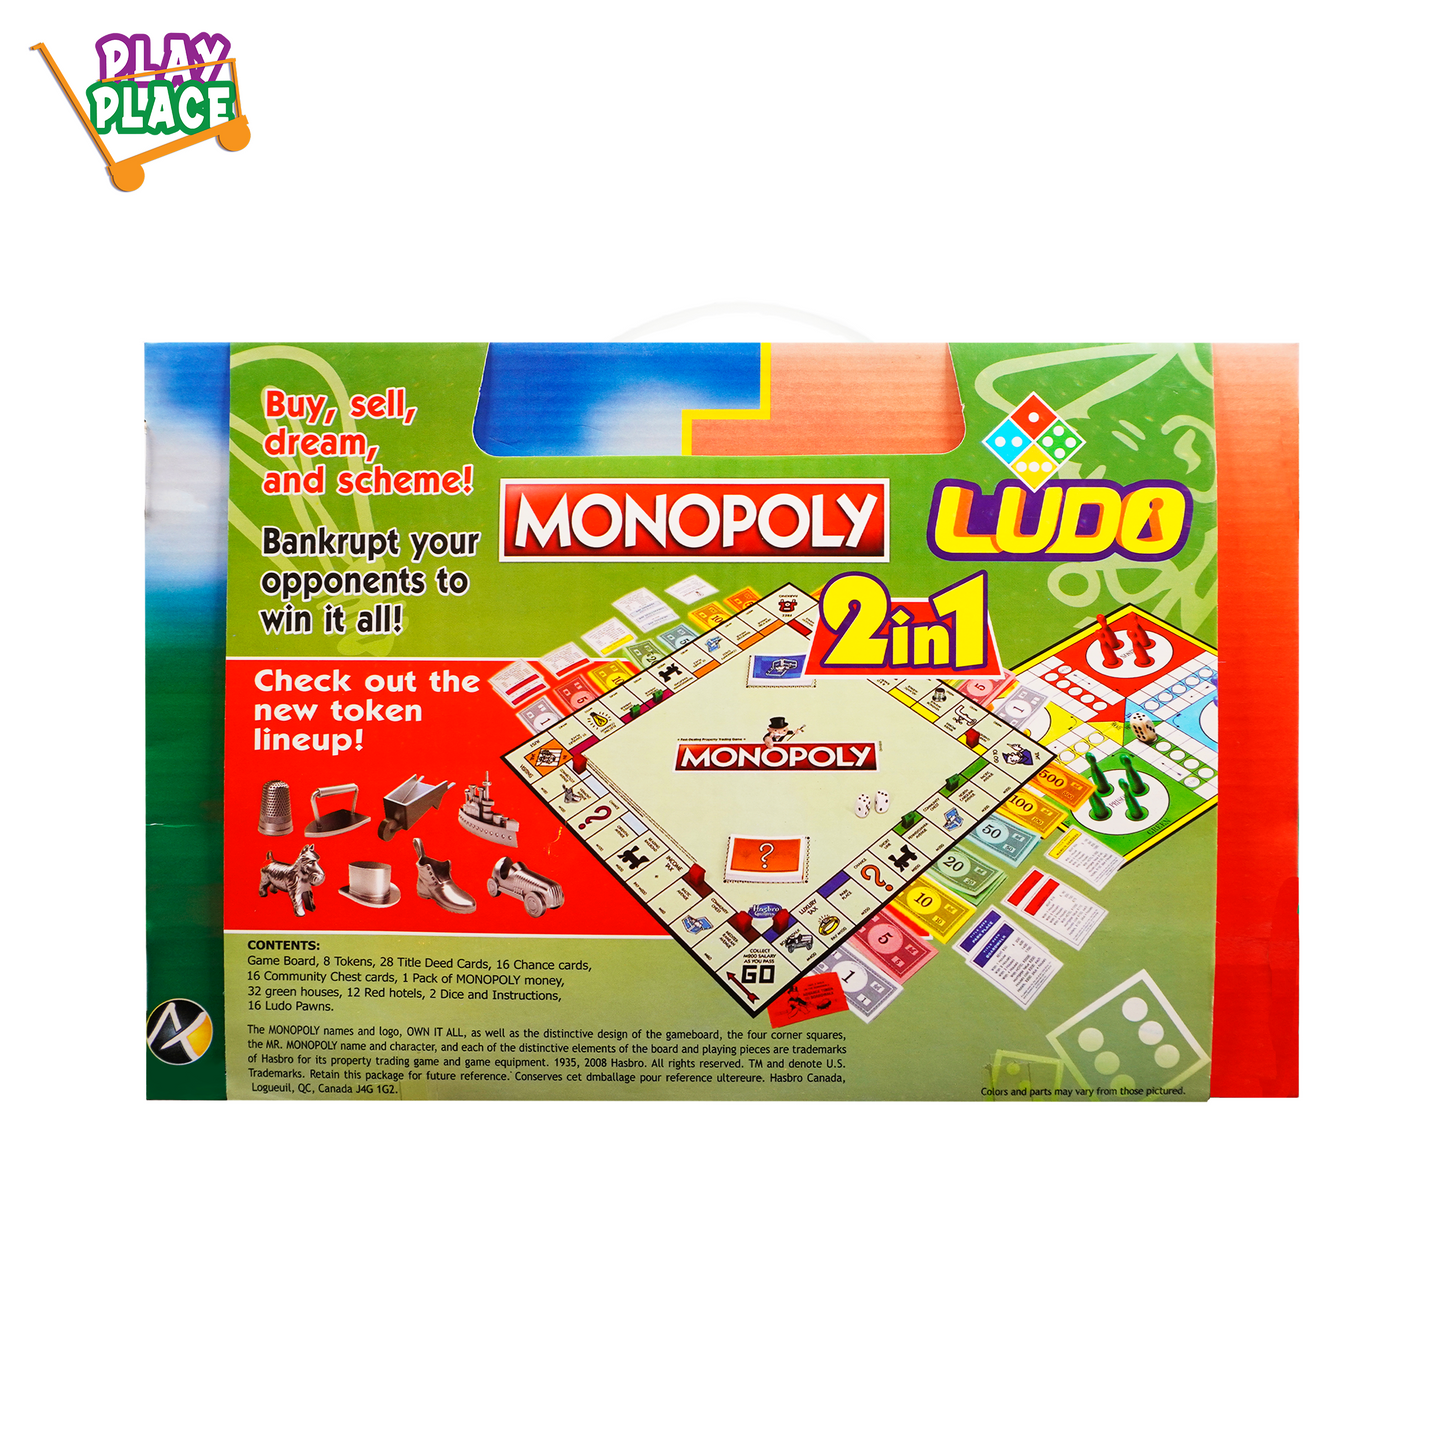 Monopoly + Ludo